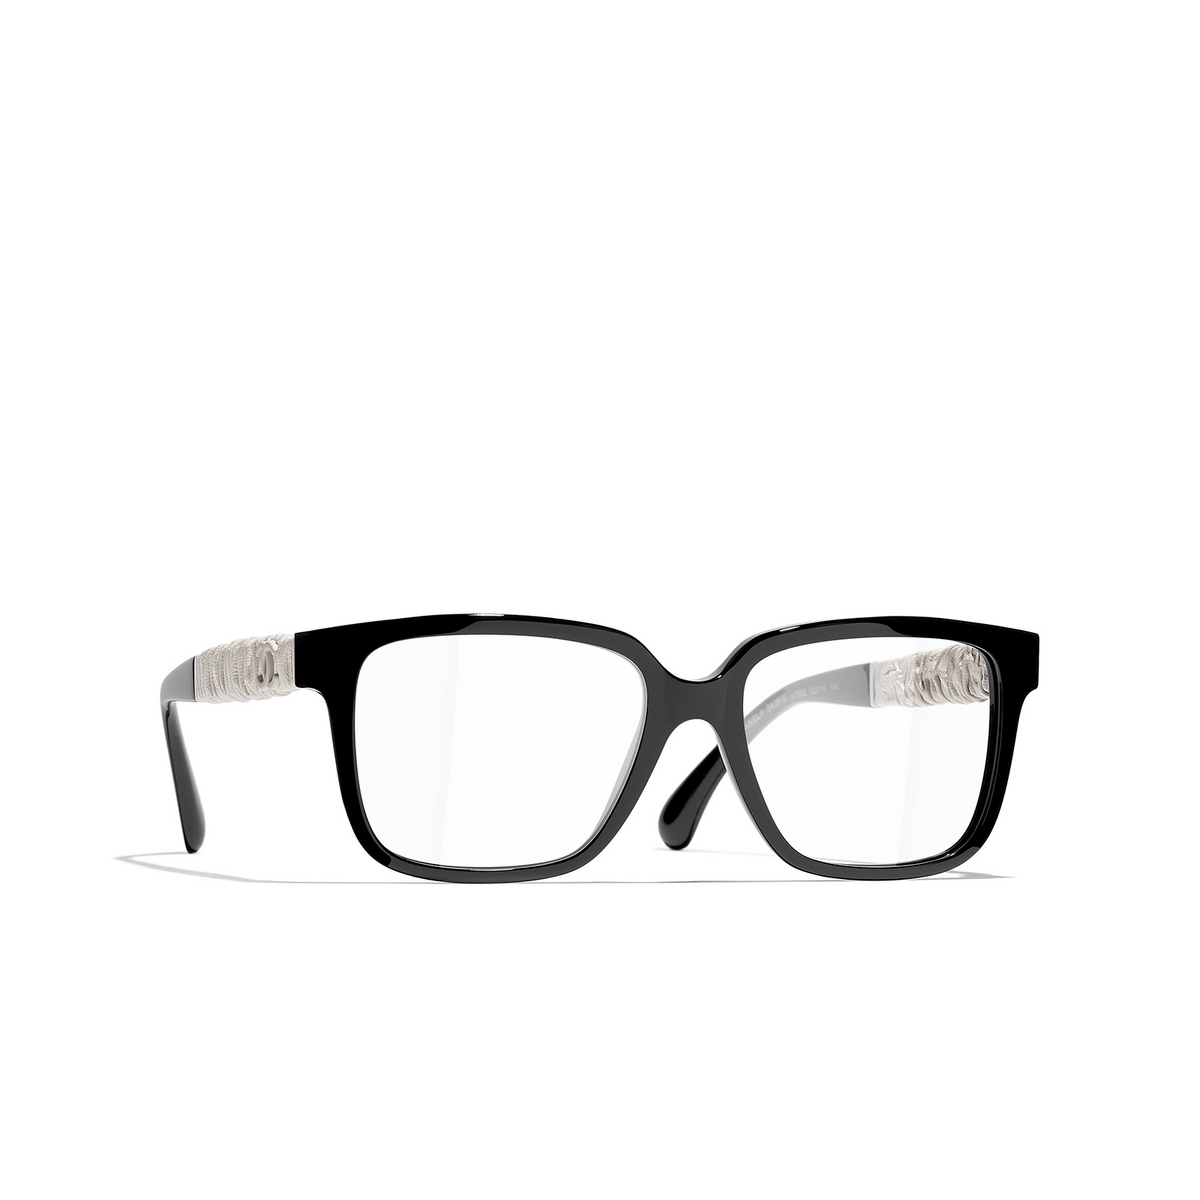 CHANEL square Eyeglasses 1082 Black & White - three-quarters view